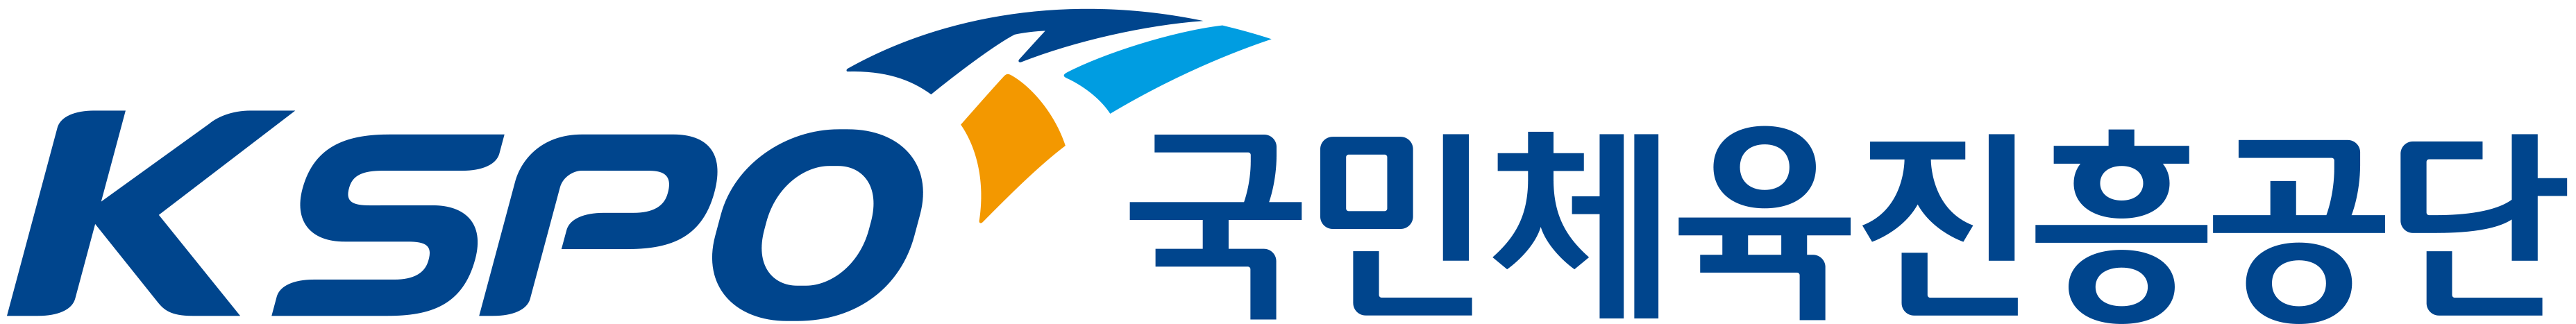 국민체육진흥공단_logo